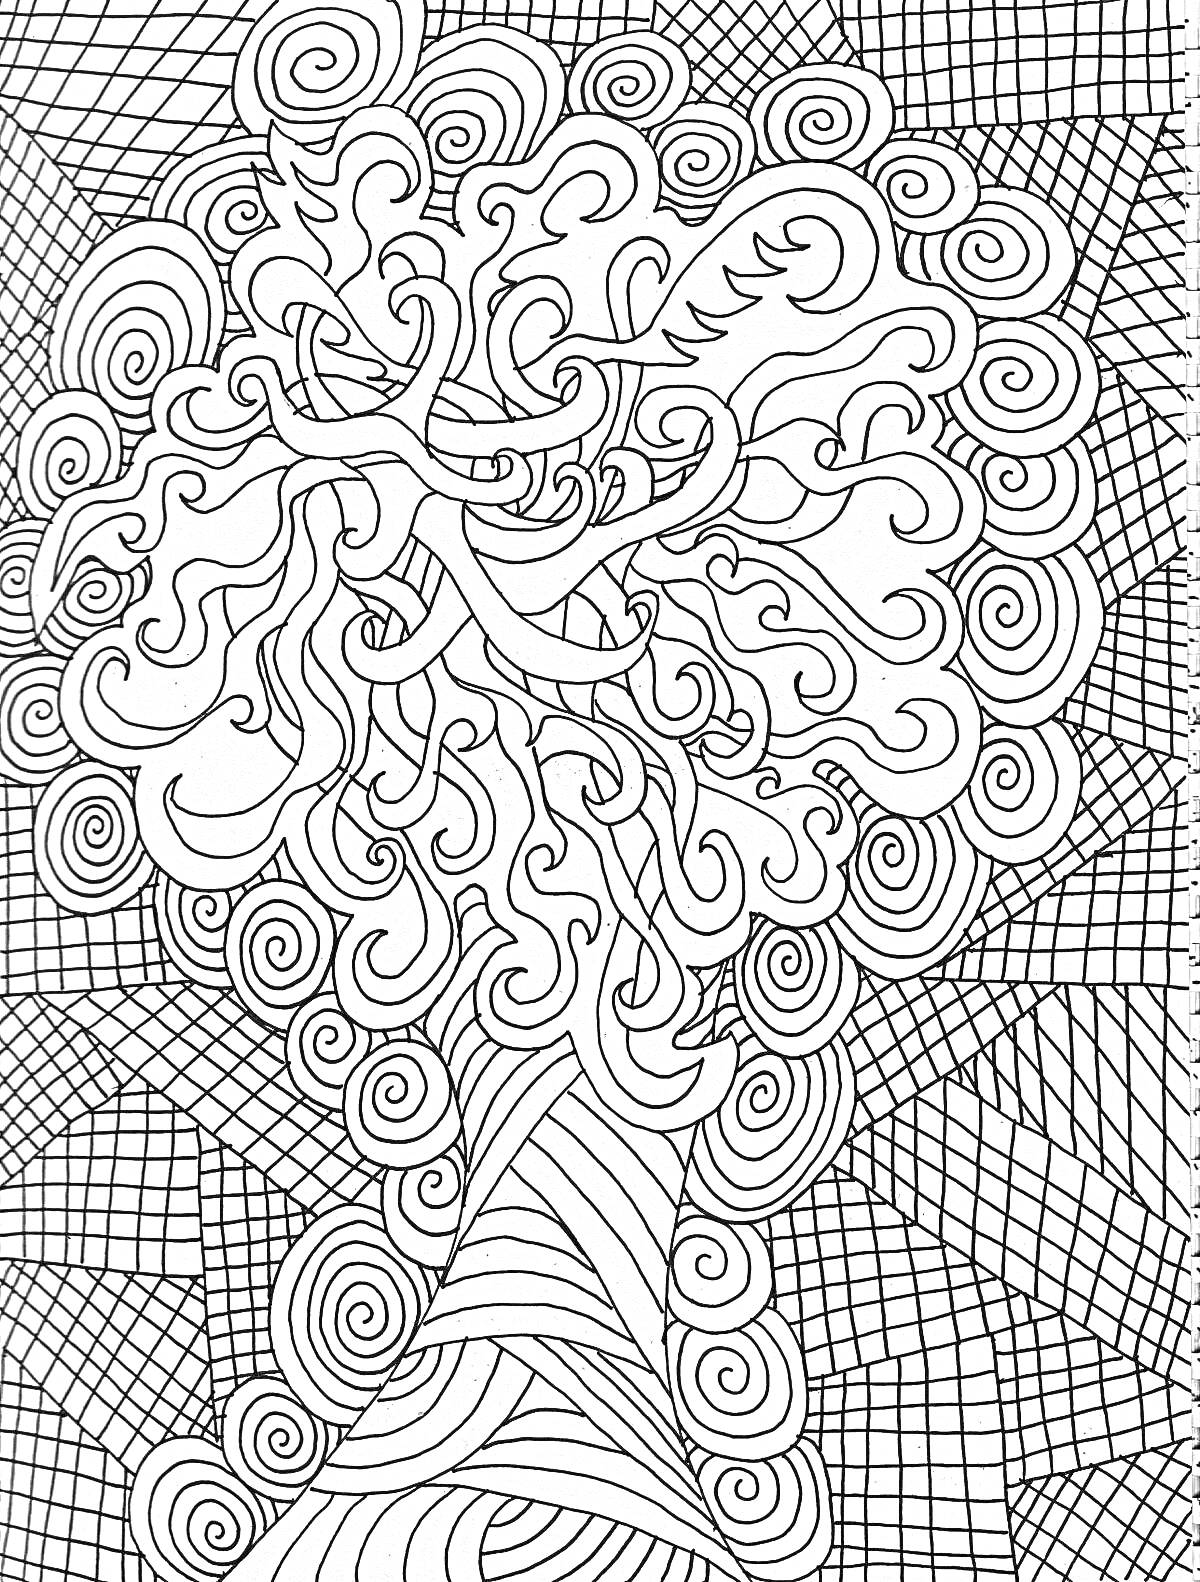 Раскраска Дерево с узорами на фоне сложных геометрических фигур